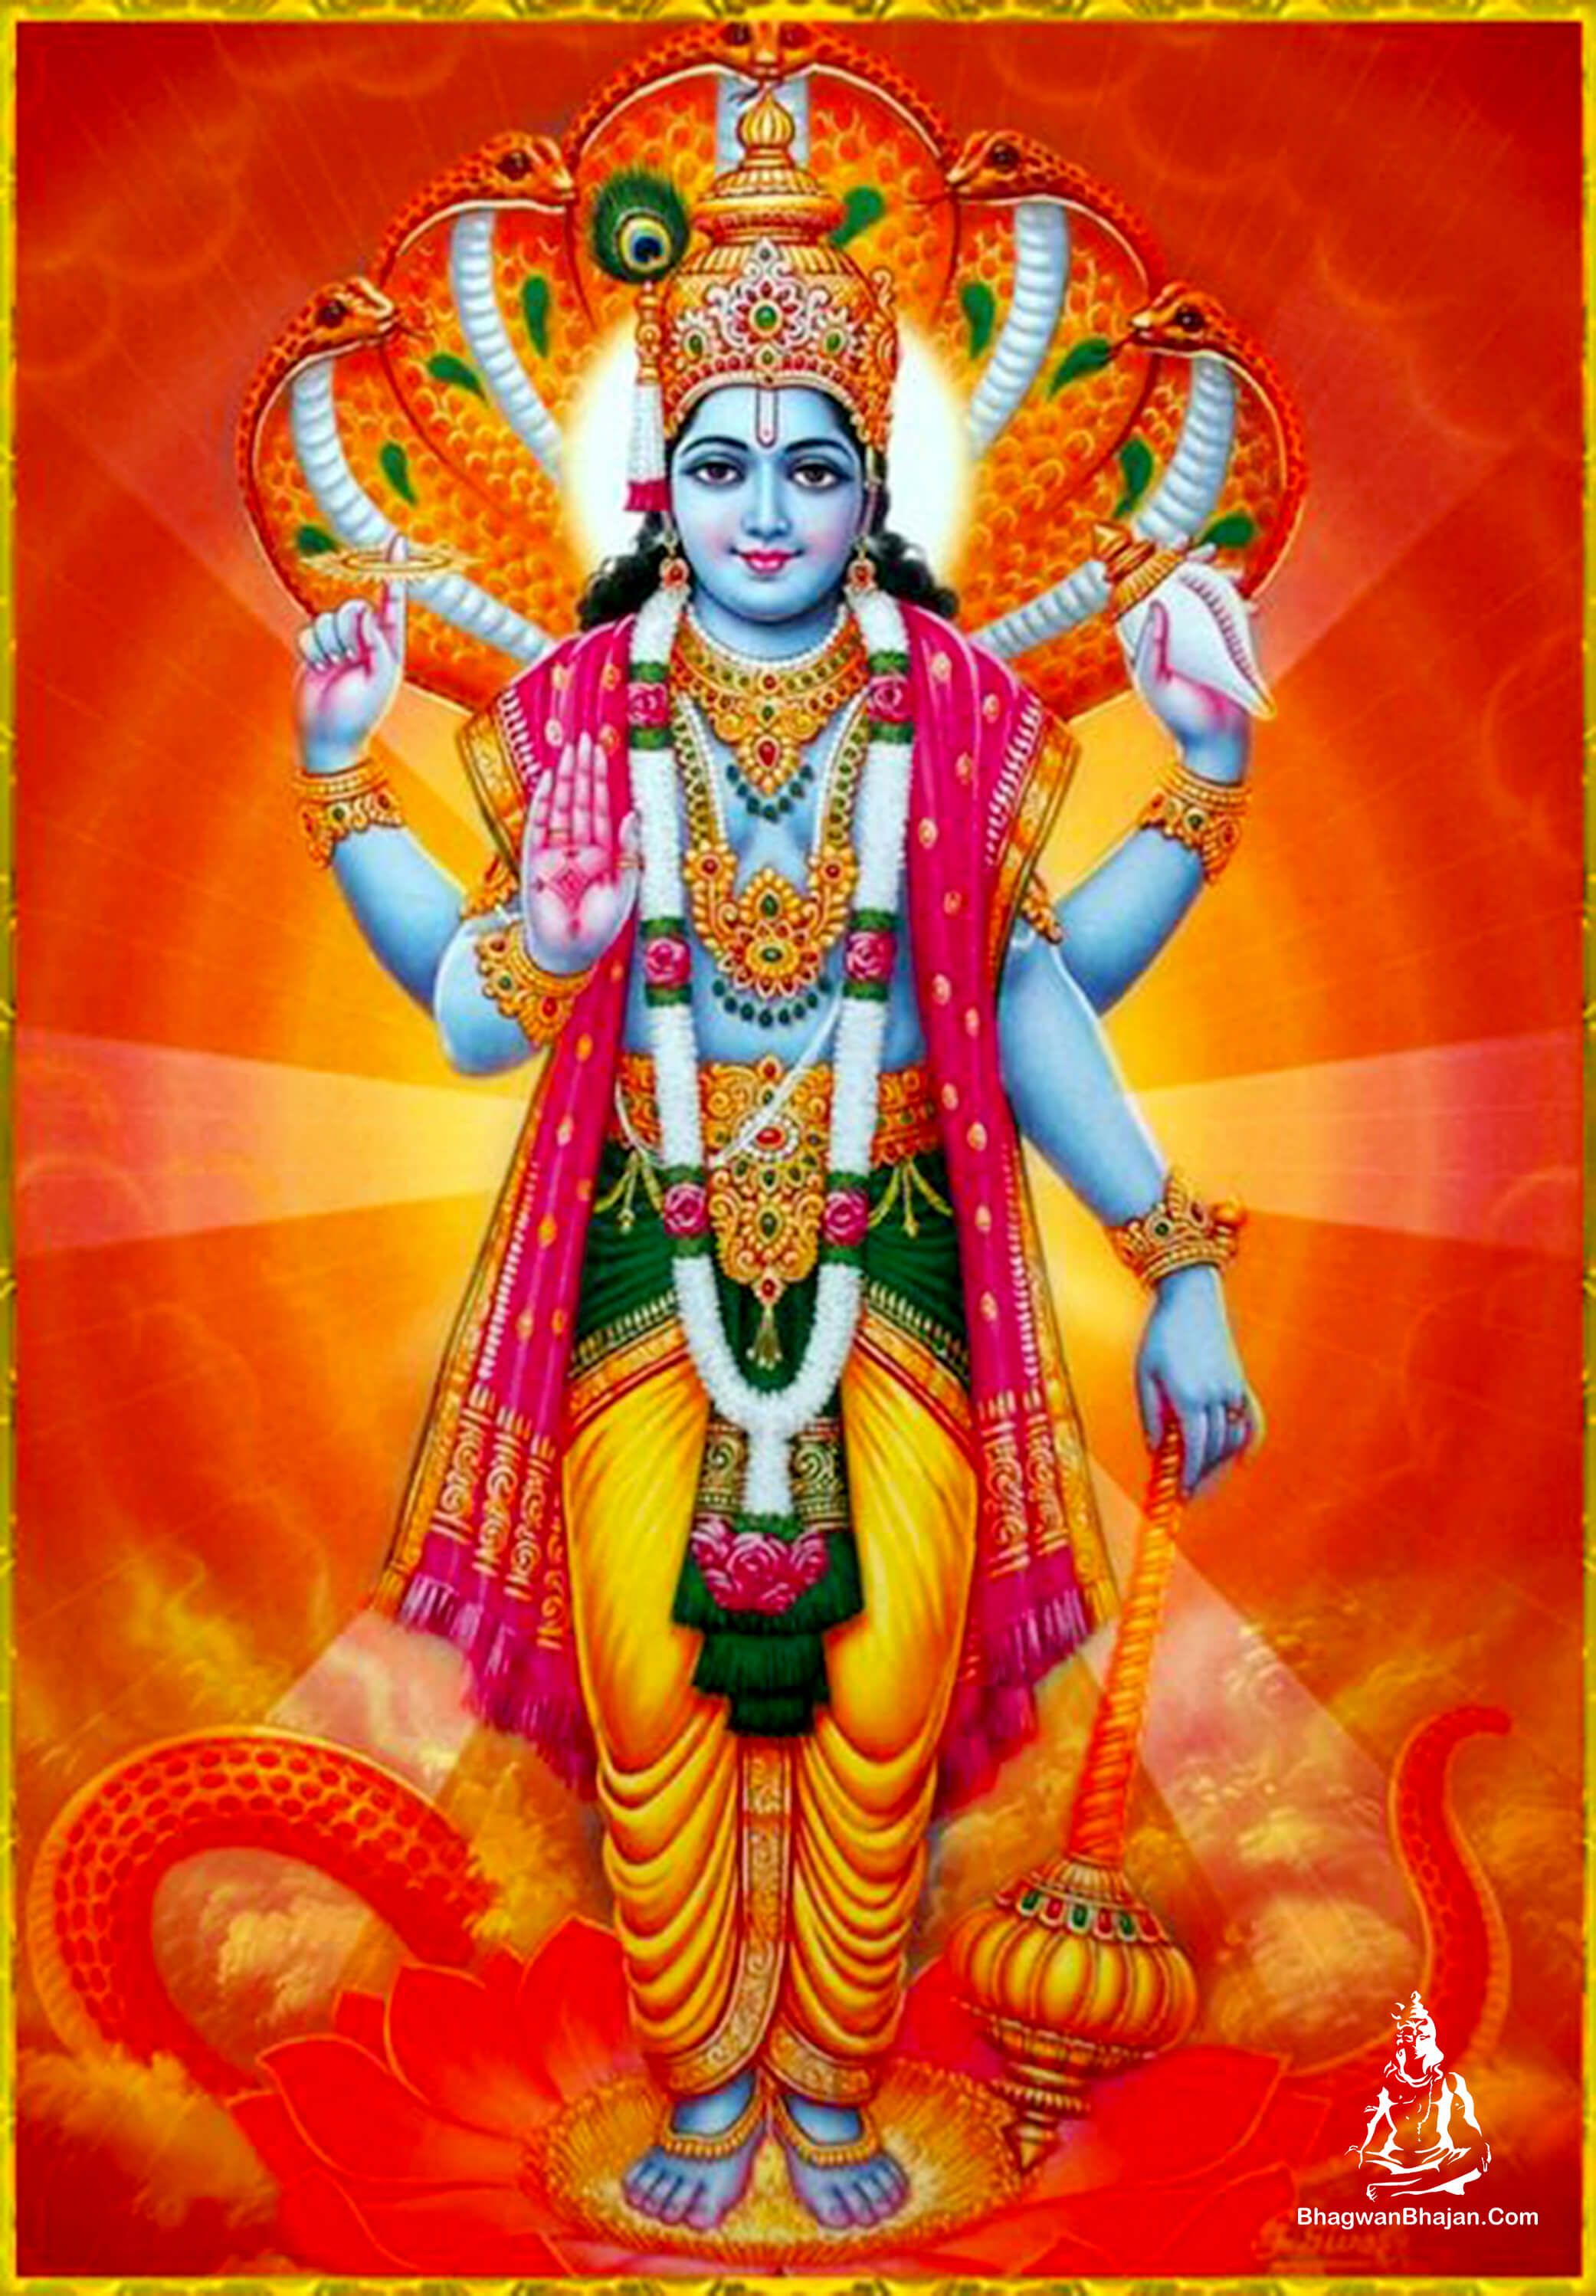 Bhagwan Vishnu HD Wallpaper Download. Lord Vishnu Photo. Vishnu Bhagwan Image. Bhagwan Vishnu Vectors